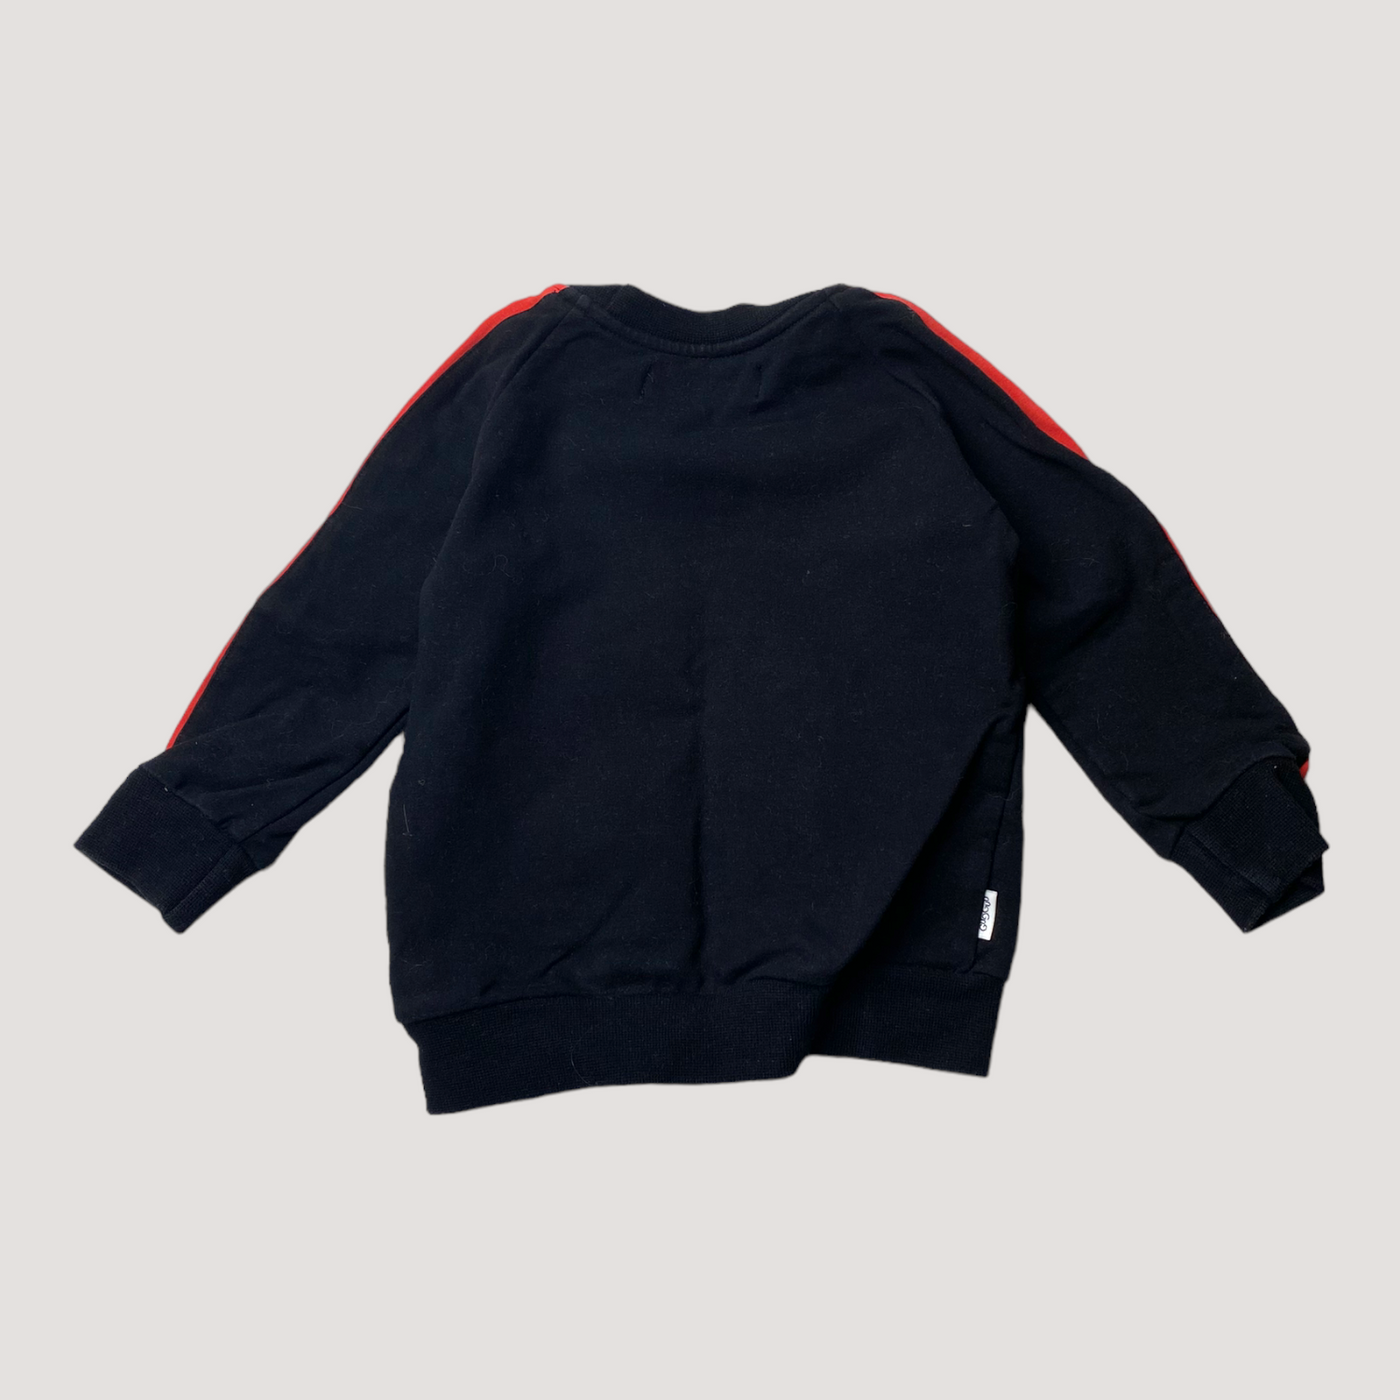 Gugguu sweatshirt, black | 80cm